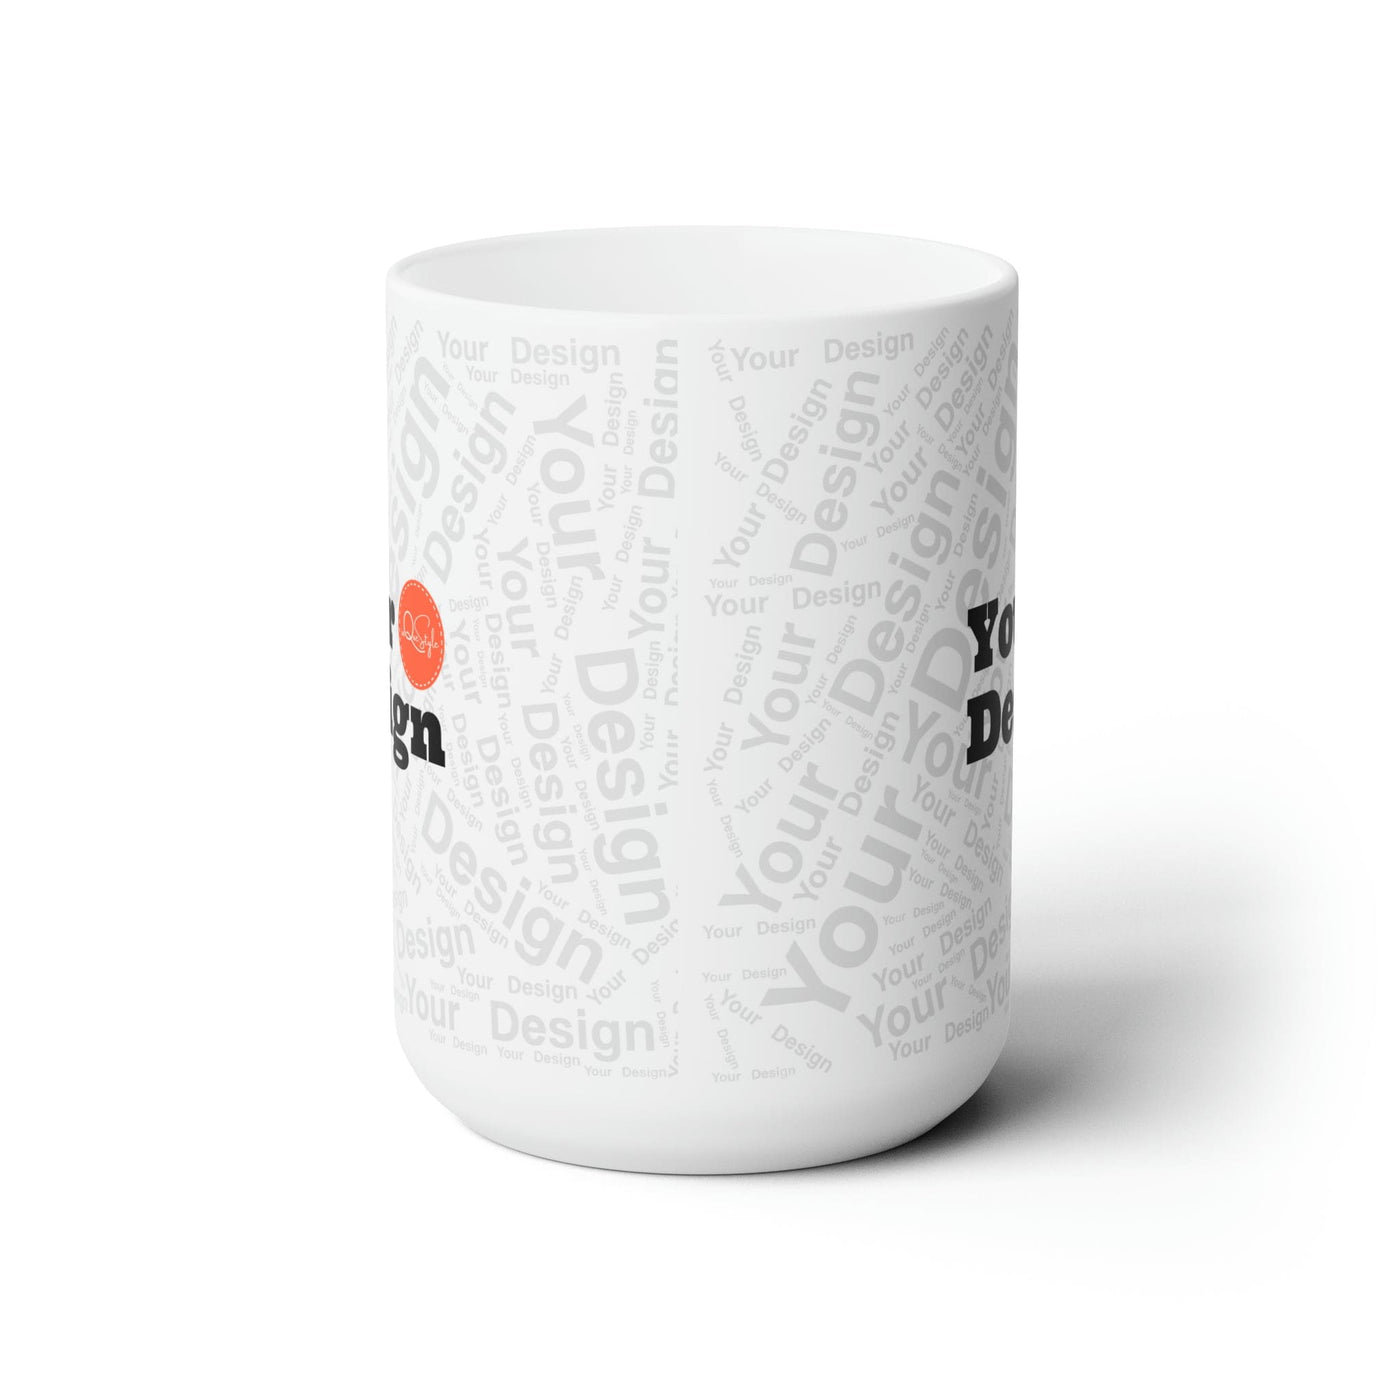 Your Design - Custom Ceramic Mug 15oz - Custom | Mugs